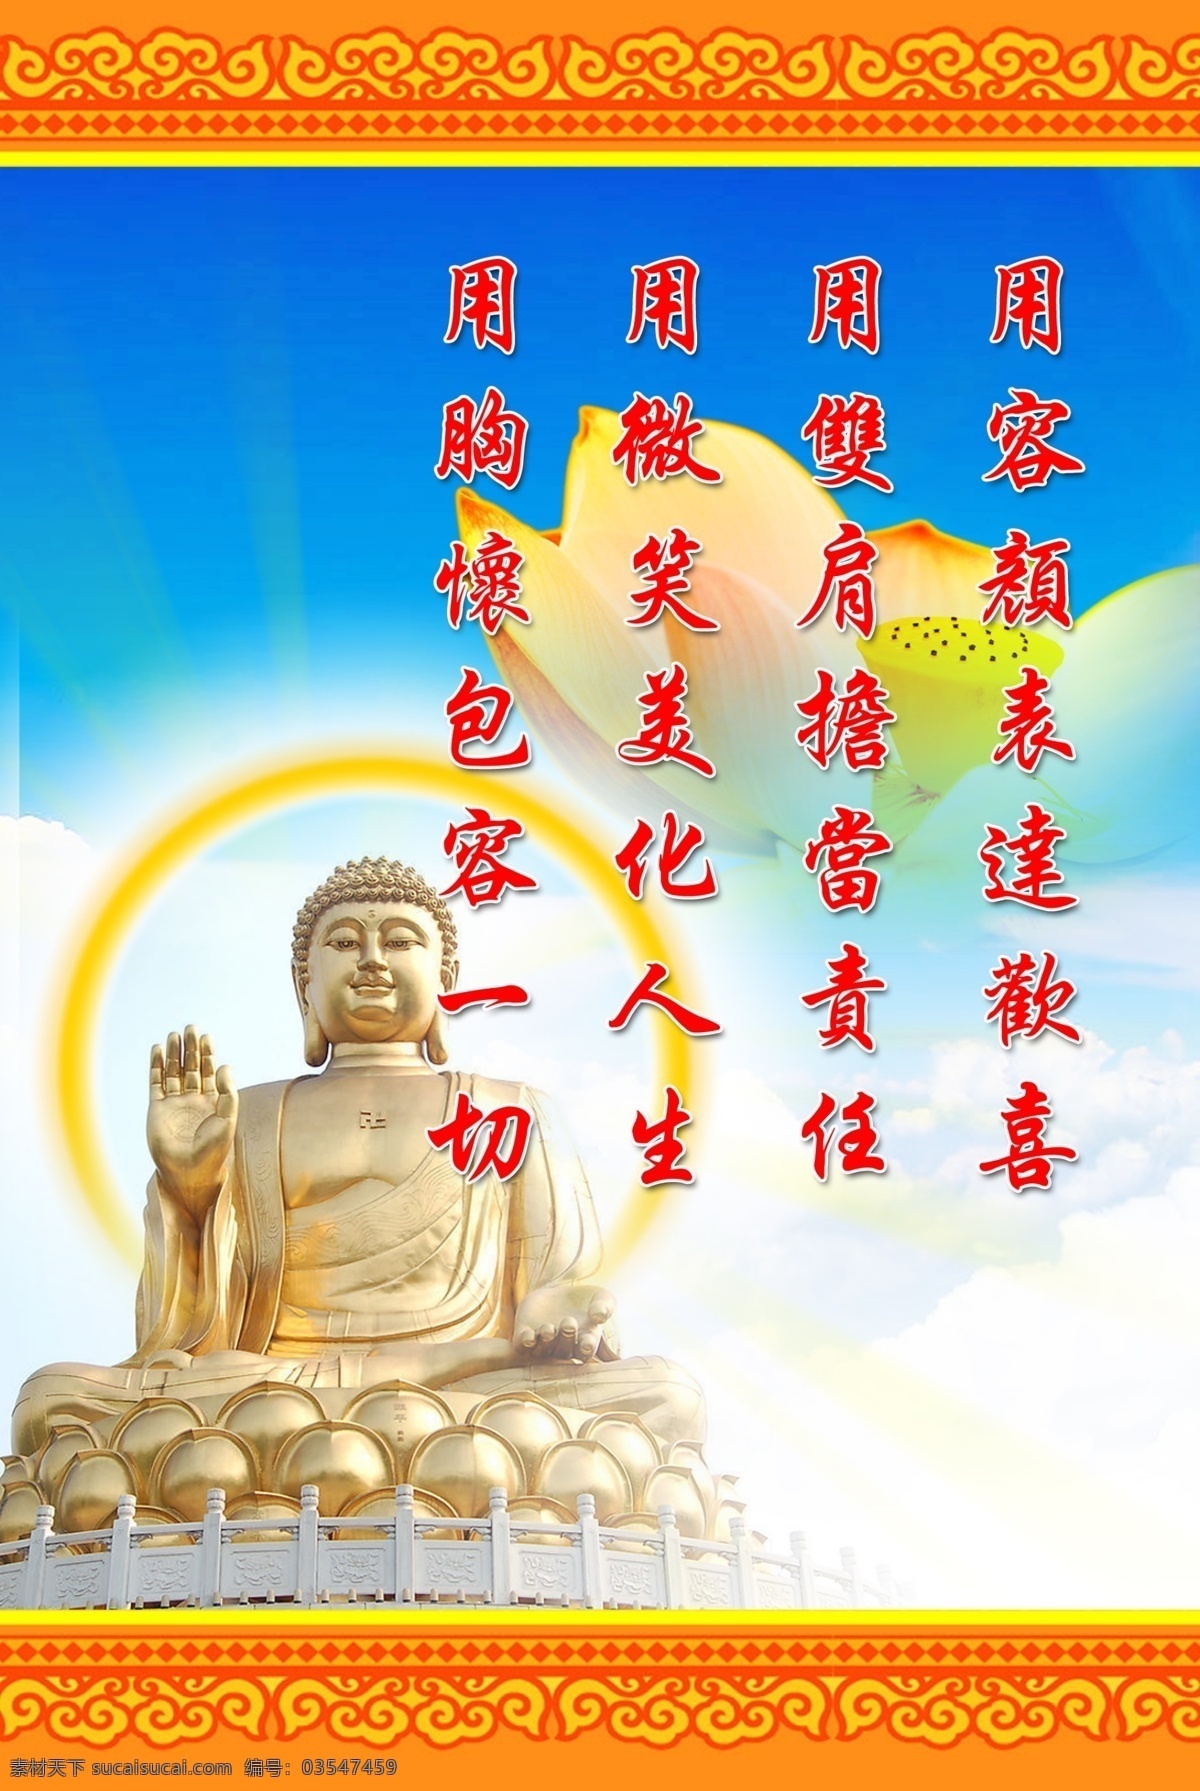 佛教免费下载 佛教 佛像 佛祖 古典 广告设计模板 荷花 如来 源文件 展板 展板模板 其他展板设计